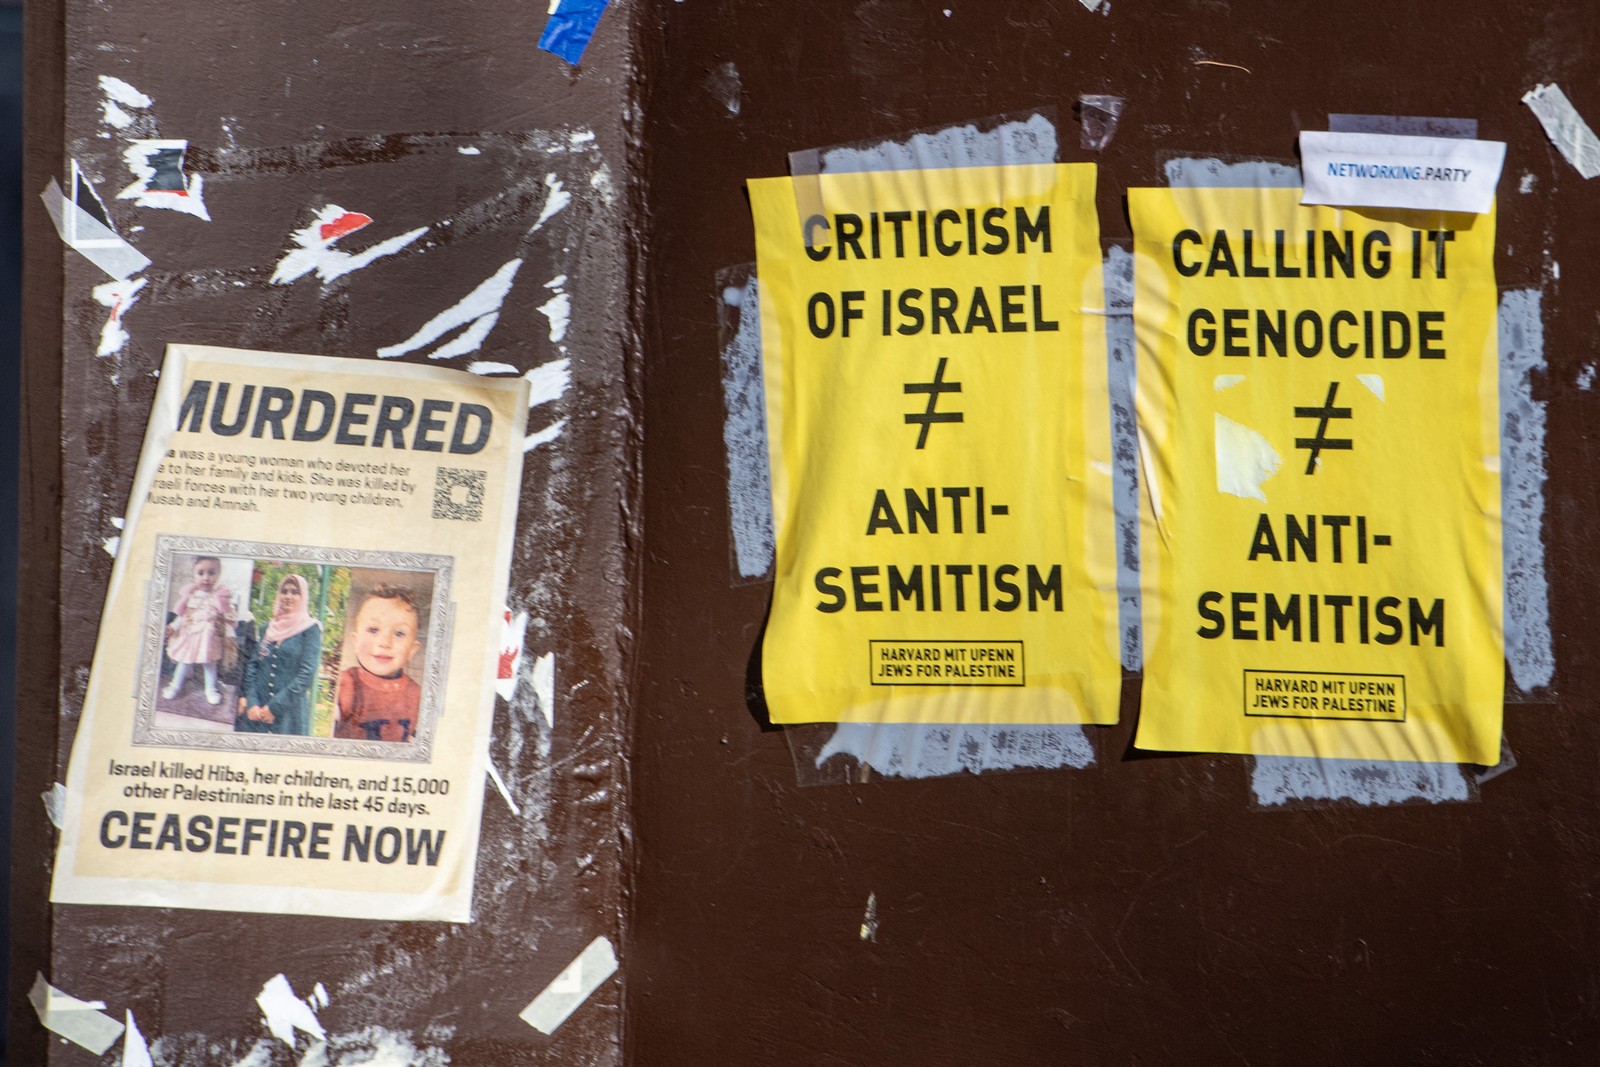 ηπα: εβραίοι φοιτητές μηνύουν το χάρβαρντ για αντισημιτισμό